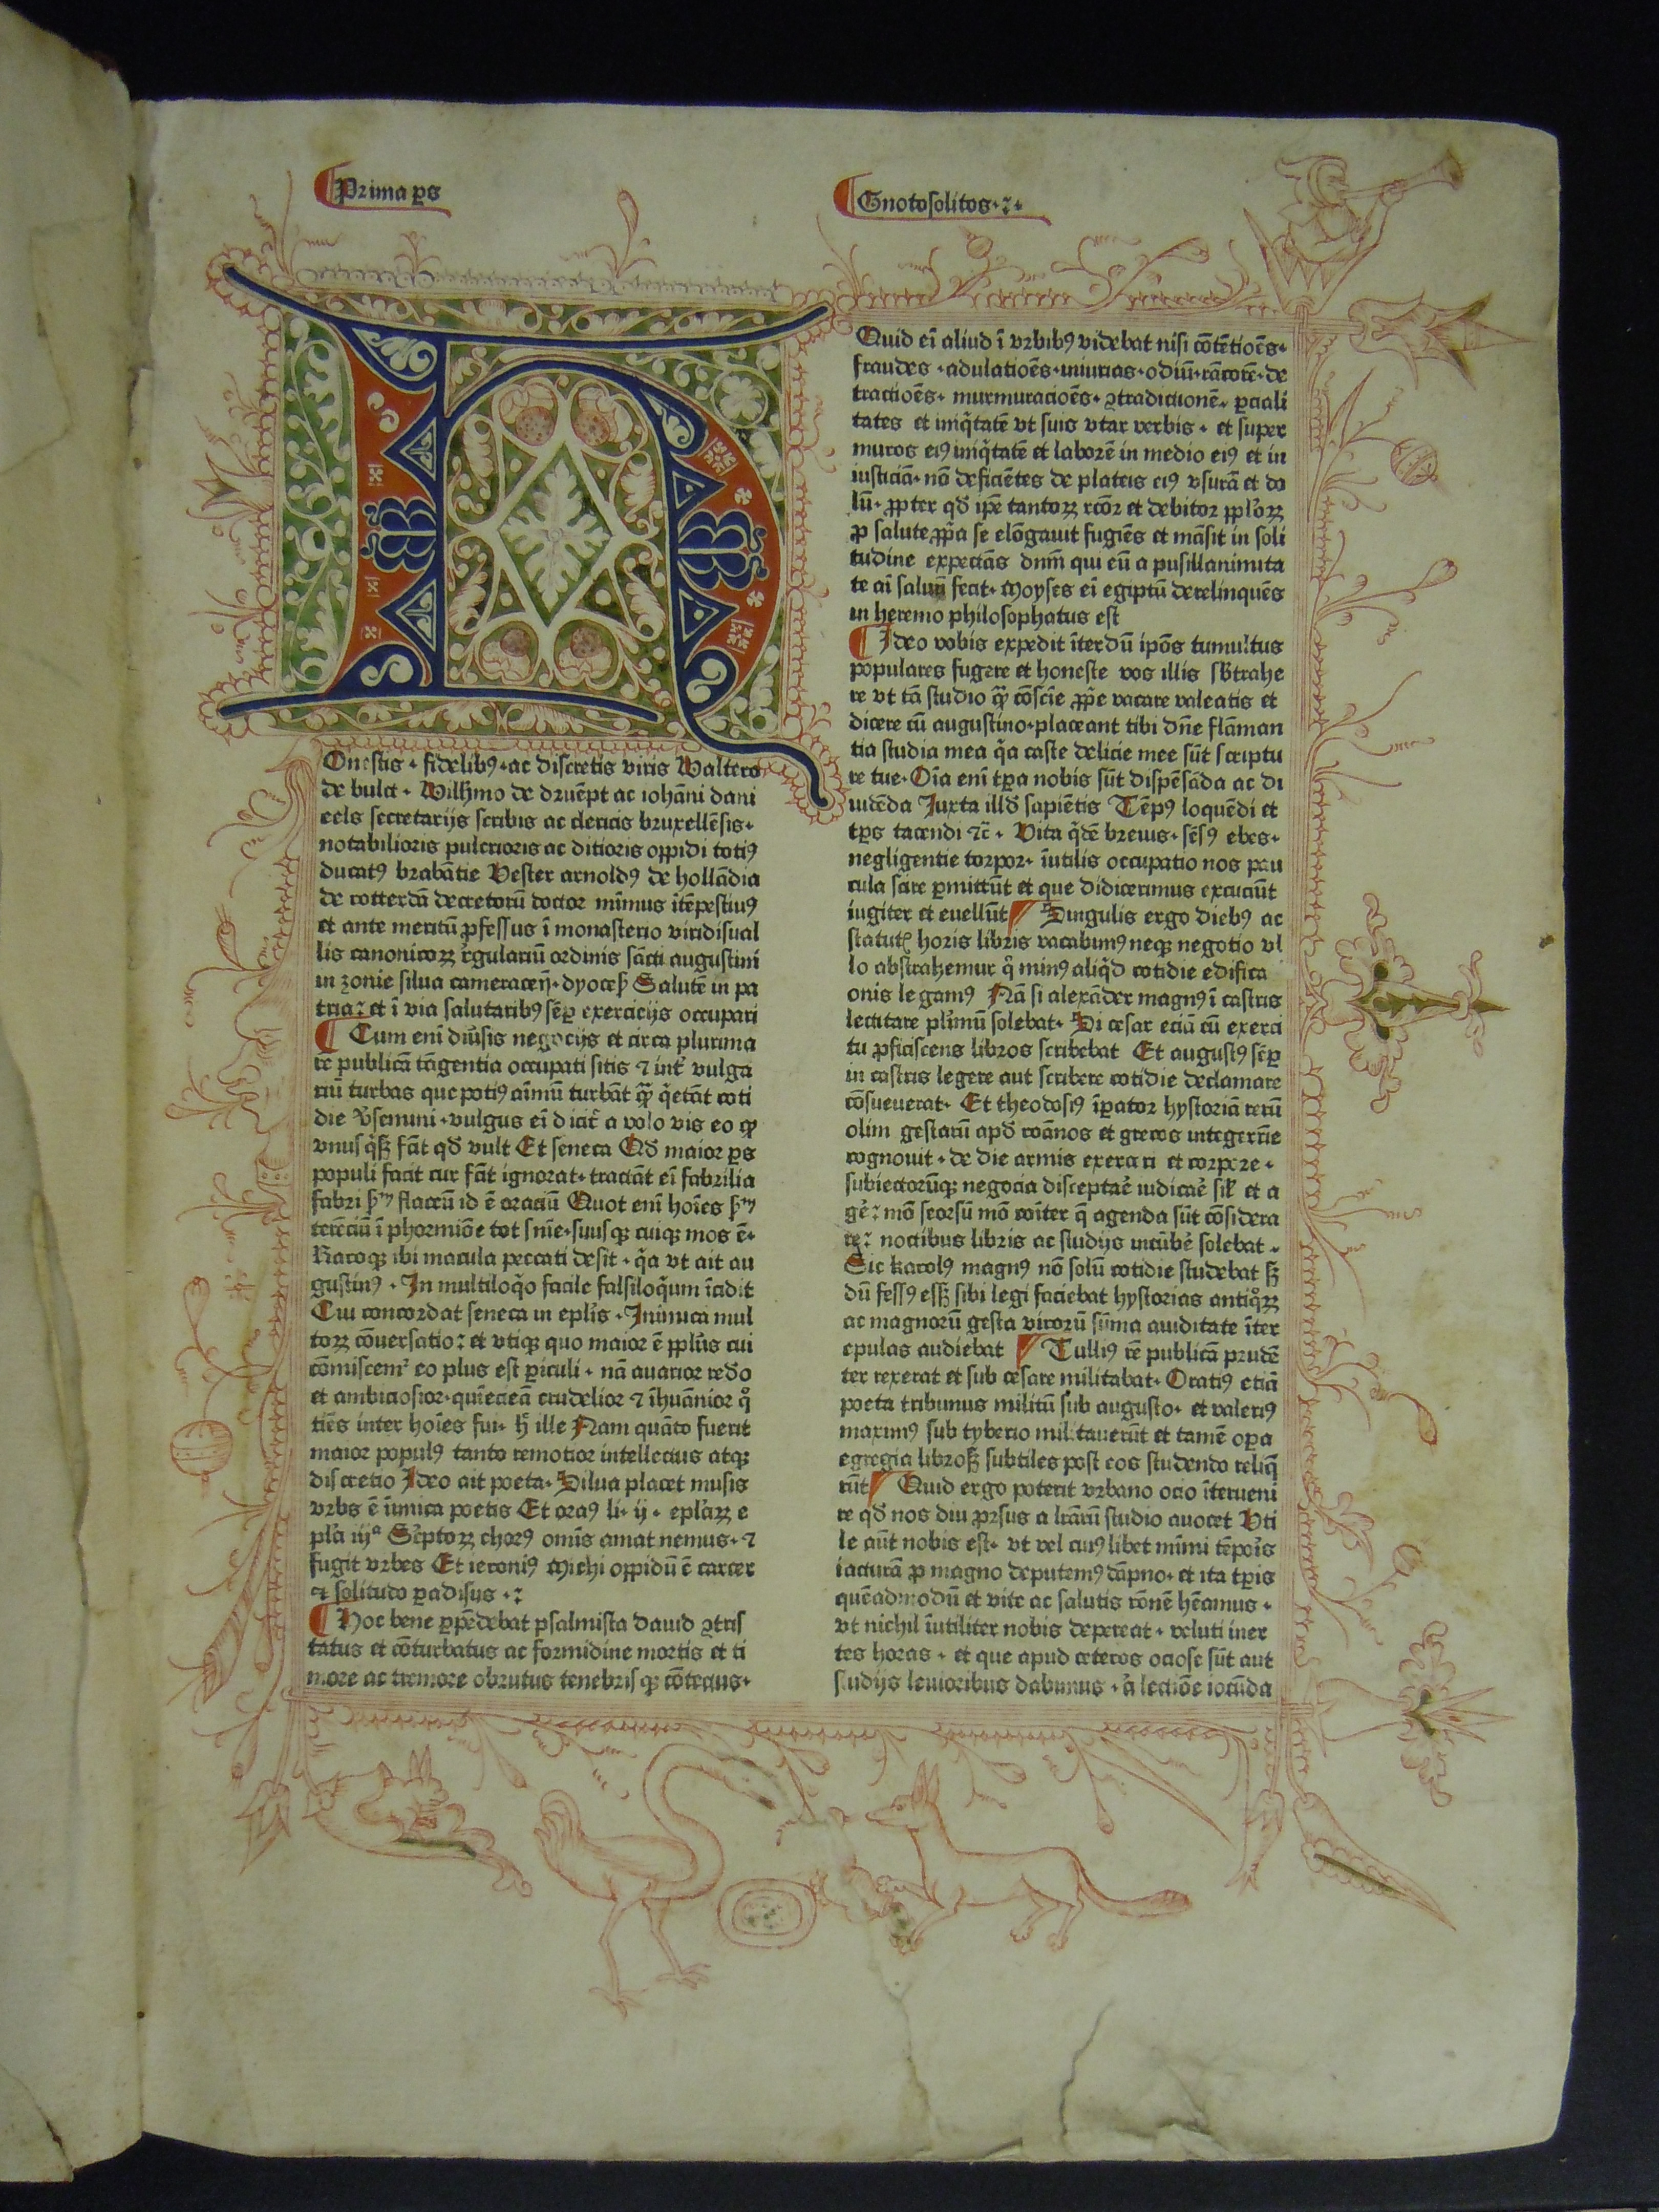 BT1.112.2, f.1r, Arnoldus de Geilhoven鈥檚 Gnotosolitos, sive Speculum conscientiae (1476)